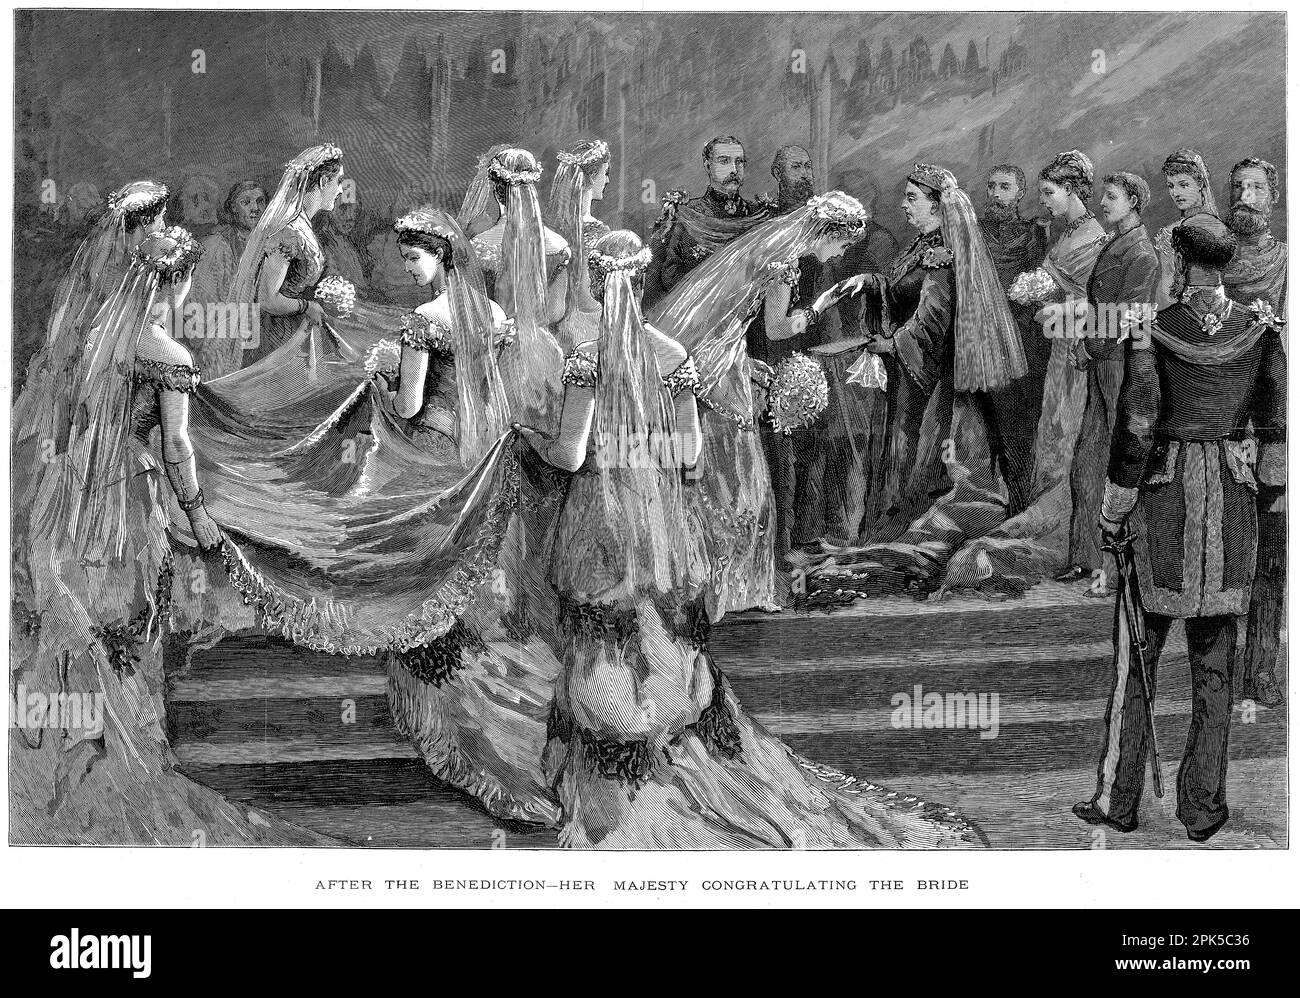 Grabado de la reina Victoria felicitando a la novia después de la ceremonia de boda para el príncipe Arturo, duque de Connaught (1850-1942), el séptimo de los nueve hijos de la reina Victoria y el príncipe Alberto y la princesa Luisa de Prusia en la Capilla de San Jorge, Windsor, 1879 Foto de stock